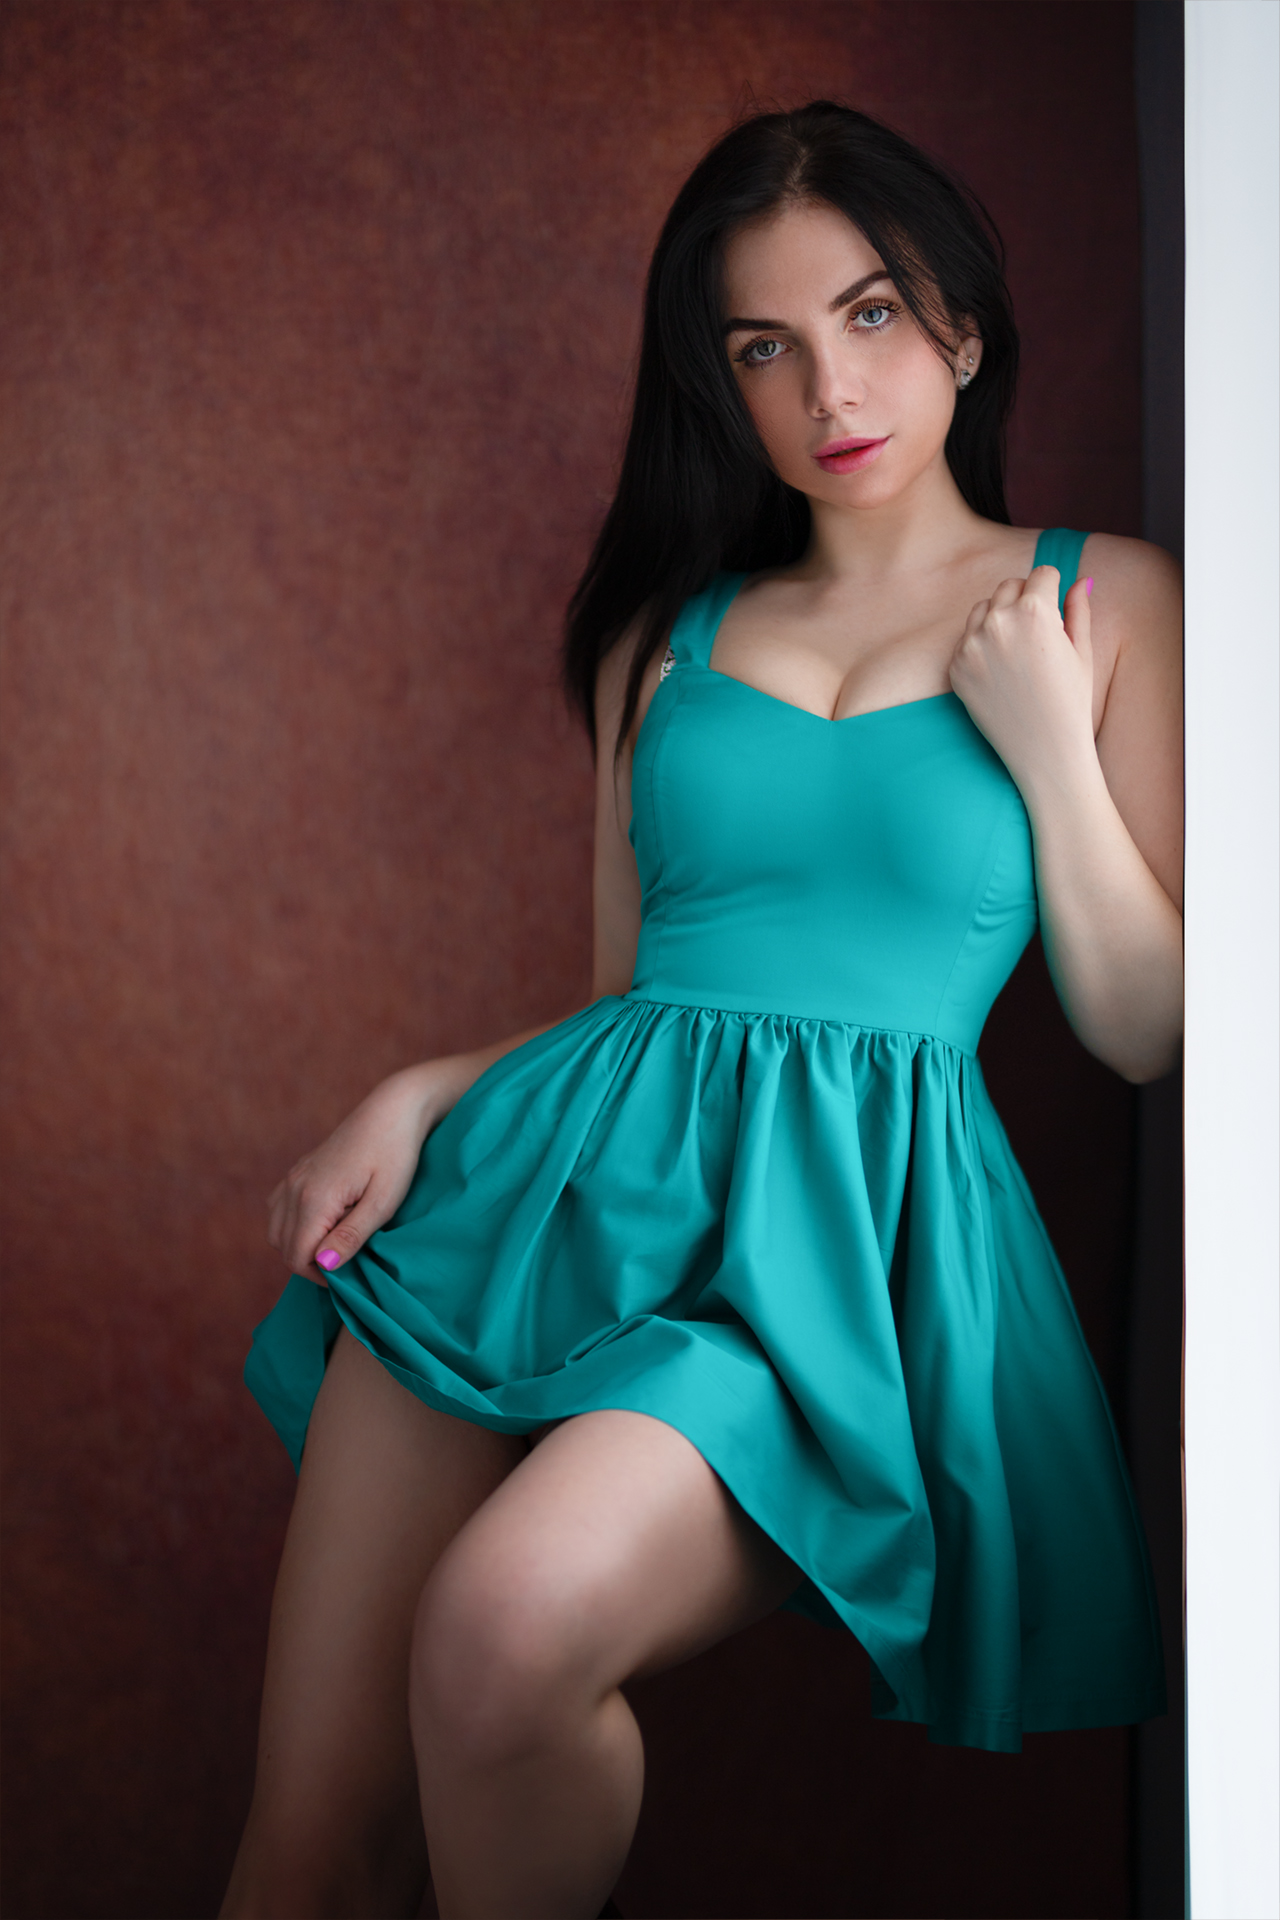 Aleksey Lozgachev Women Dark Hair Makeup Dress Turquoise Clothing Pink Nails Doorways 1280x1920